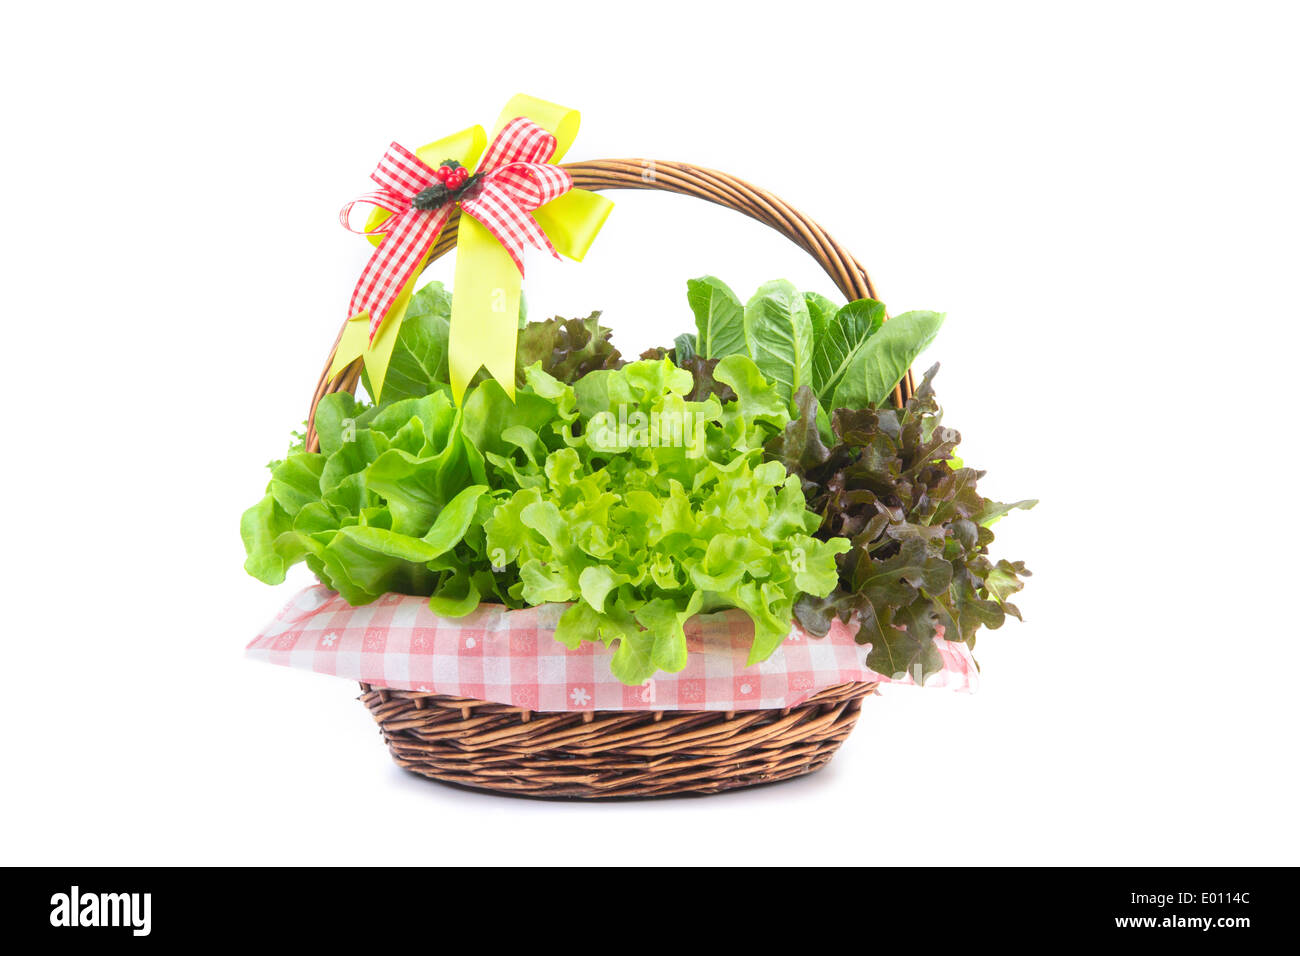 Légumes hydroponiques biologiques arrangement isolé sur fond blanc Banque D'Images